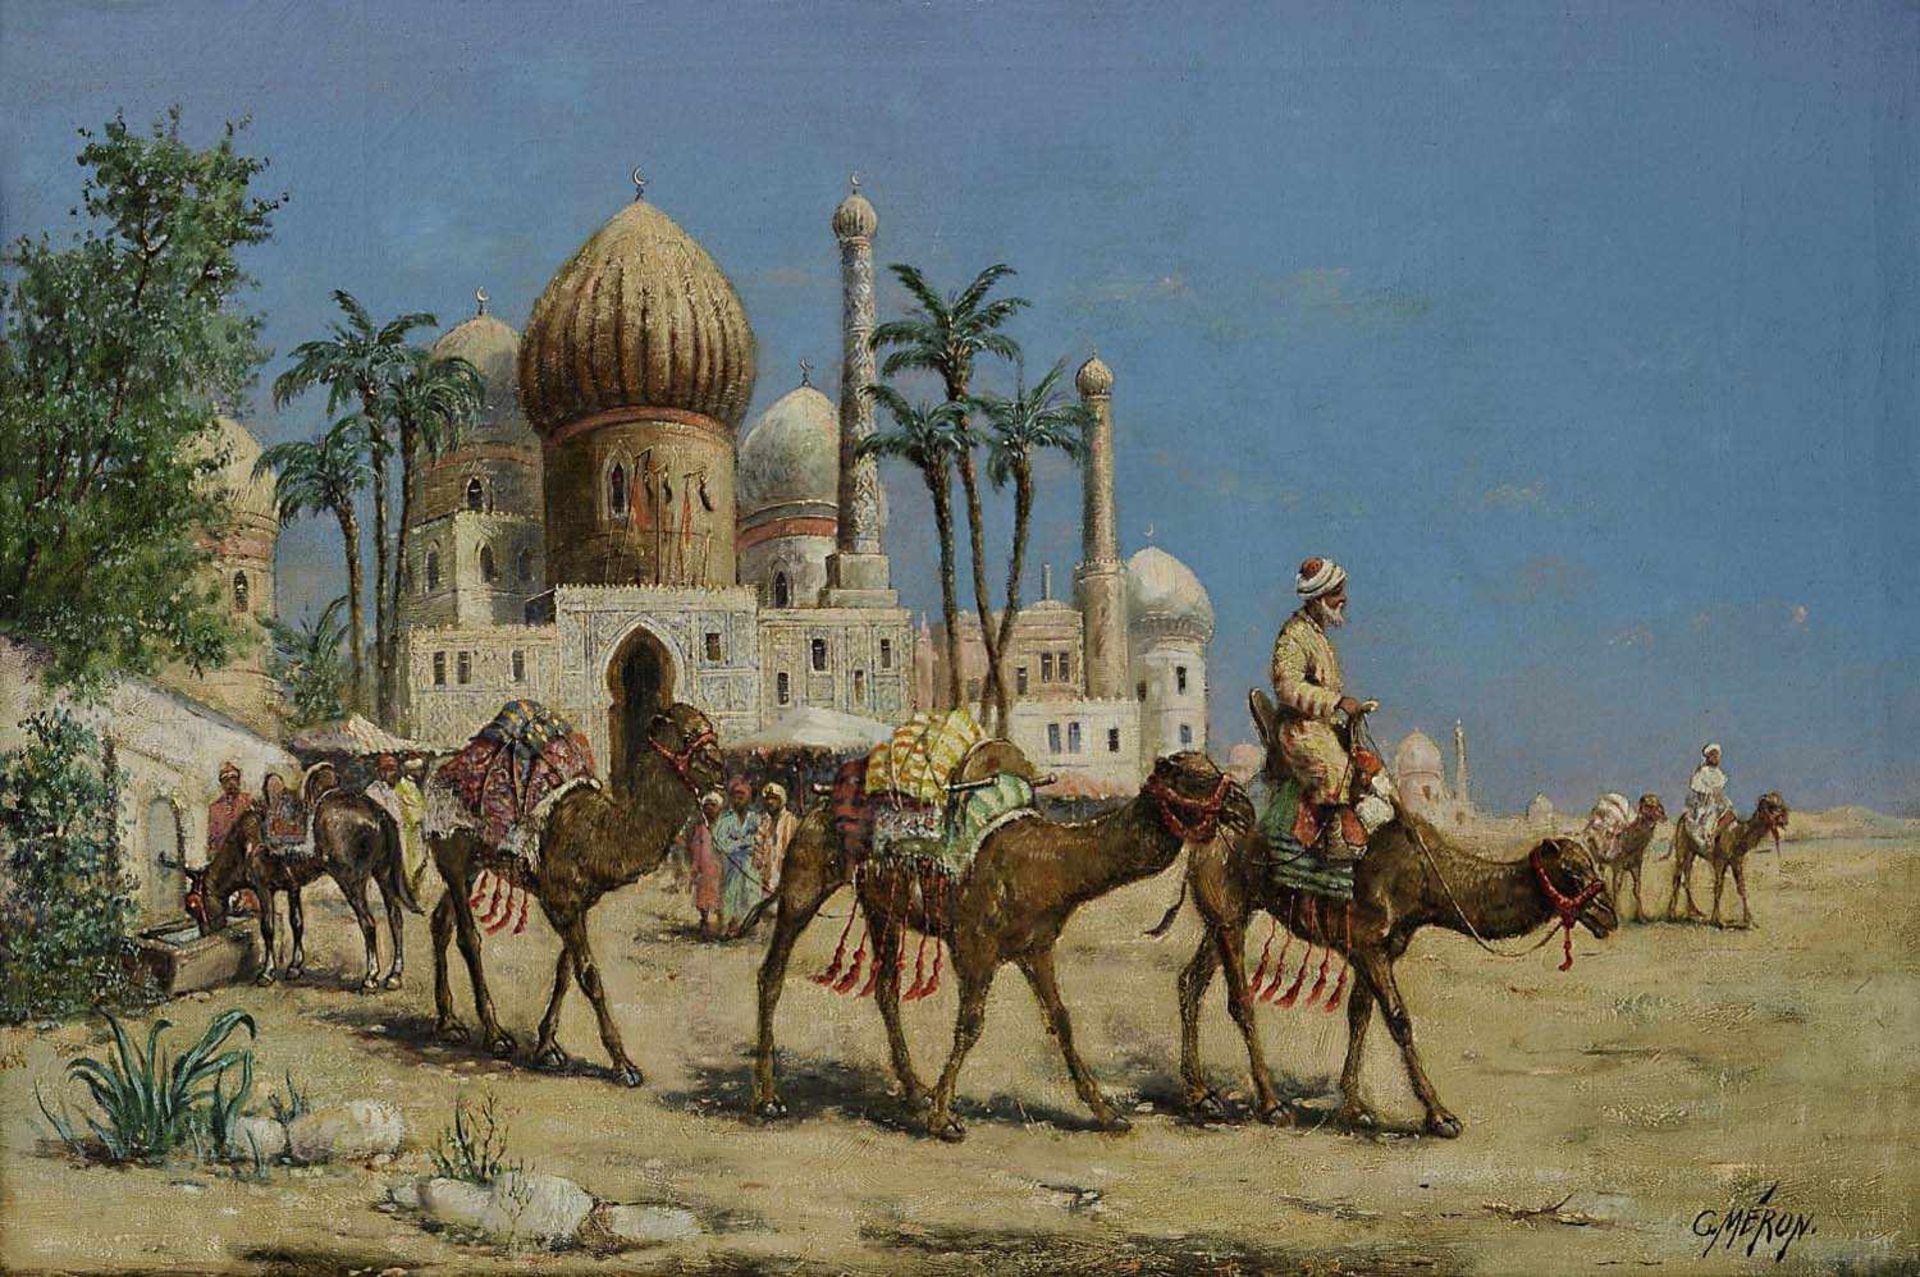 Meron, C.um 1900Karawane vor den Toren einer orientalischen Stadt (Luxor?)Öl / Lwd. 53 x 79 cmR.